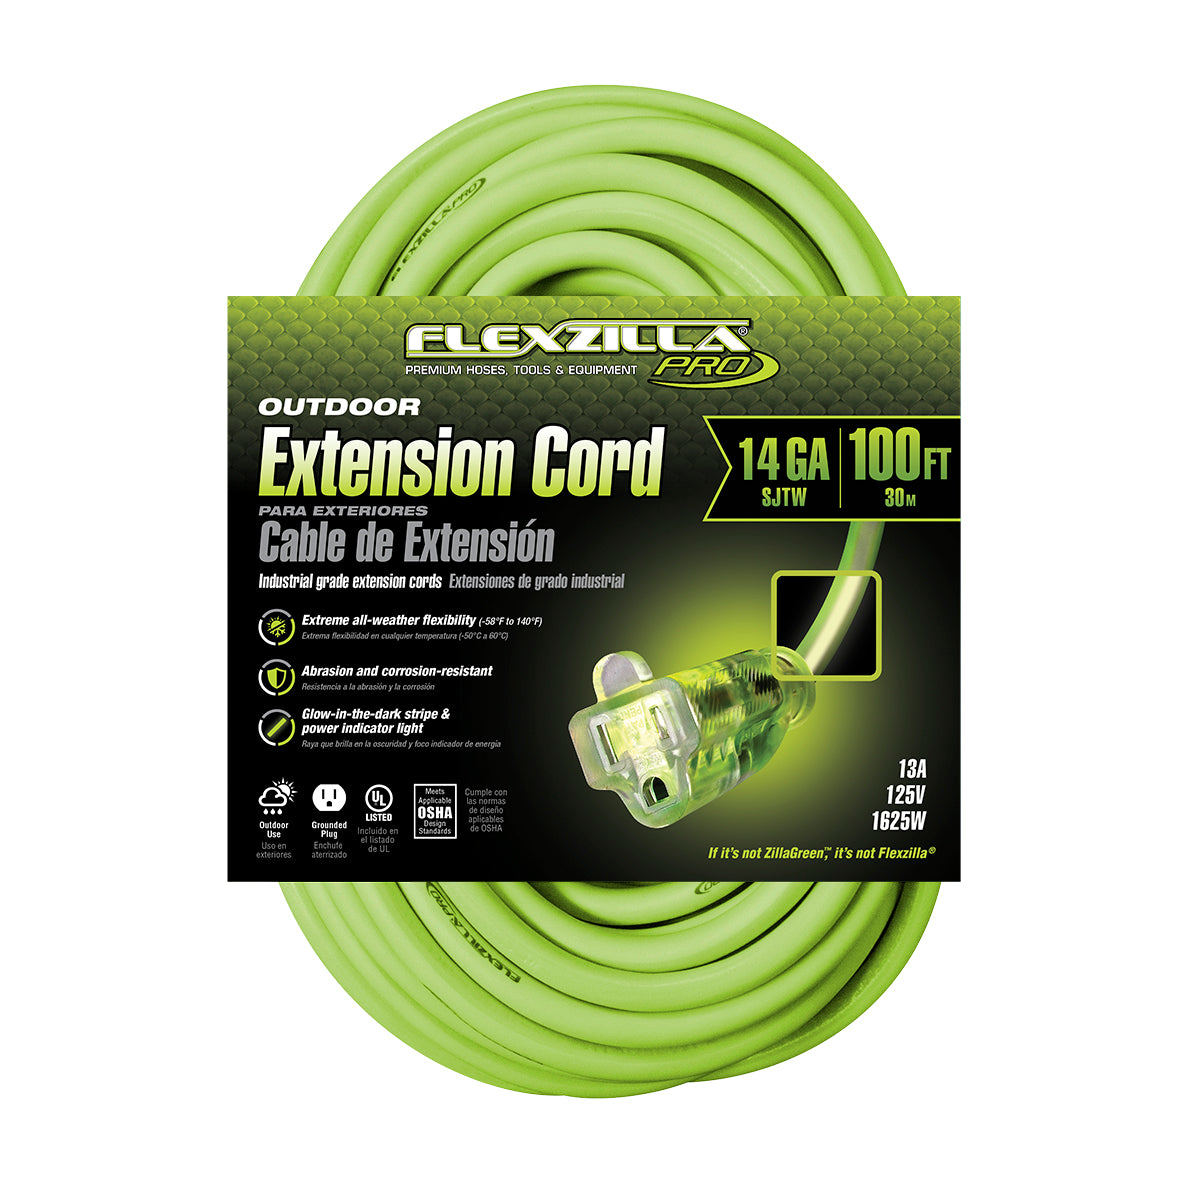 Flexzilla USA-Made Extension Cords!